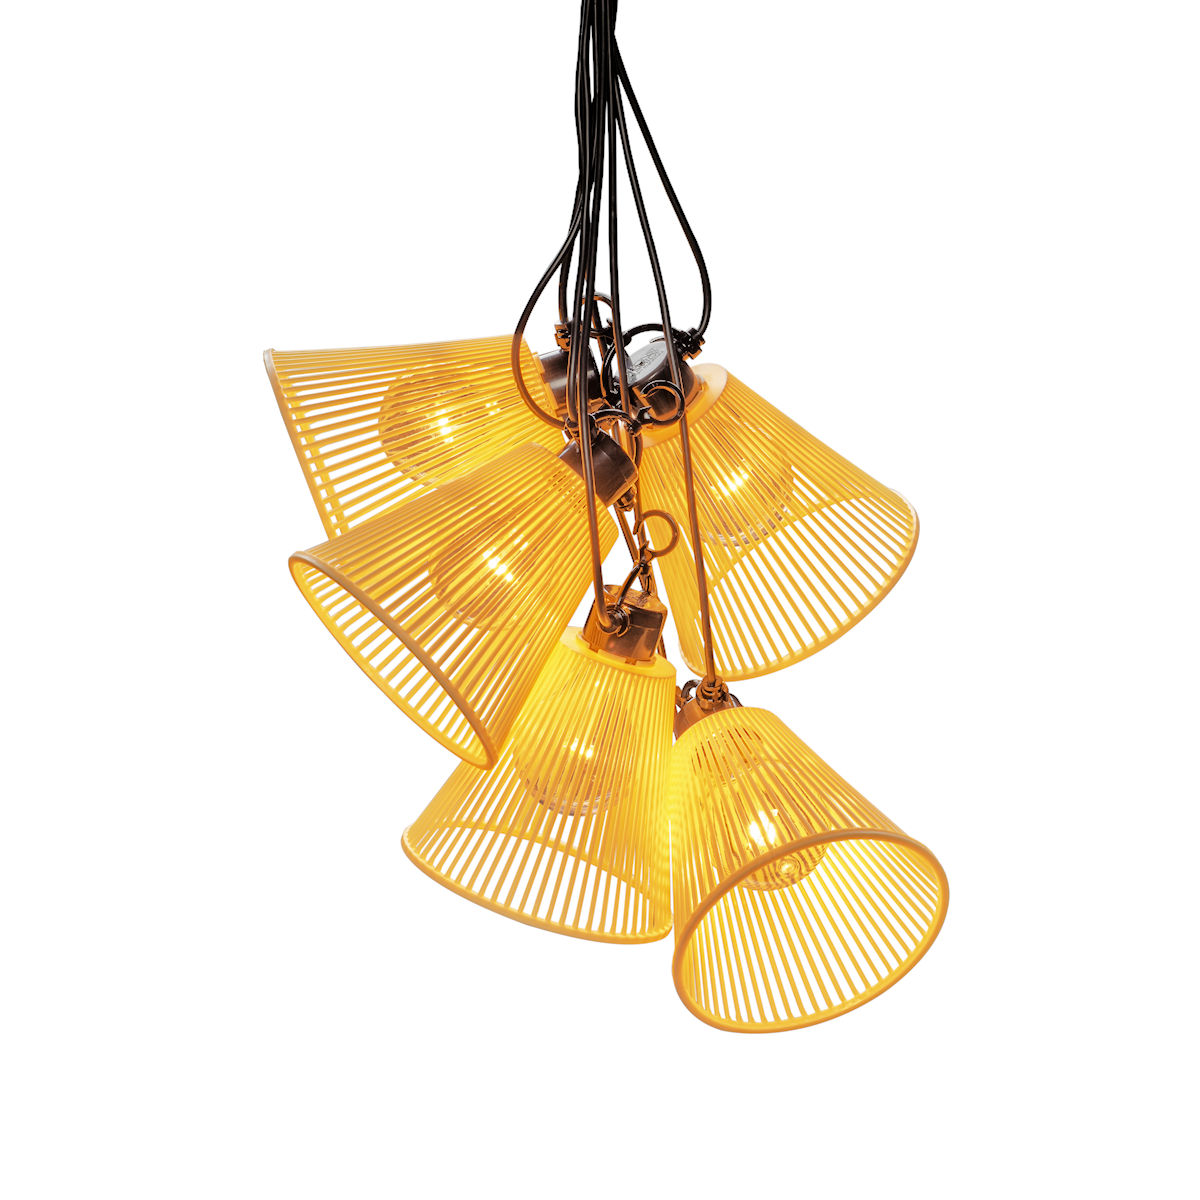 LED-Biergarten-Lichterkette mit 10 gelben Lampenschirmen, Basis-Set 9,15 m,  bernsteinfarben, klassisch warmweiß